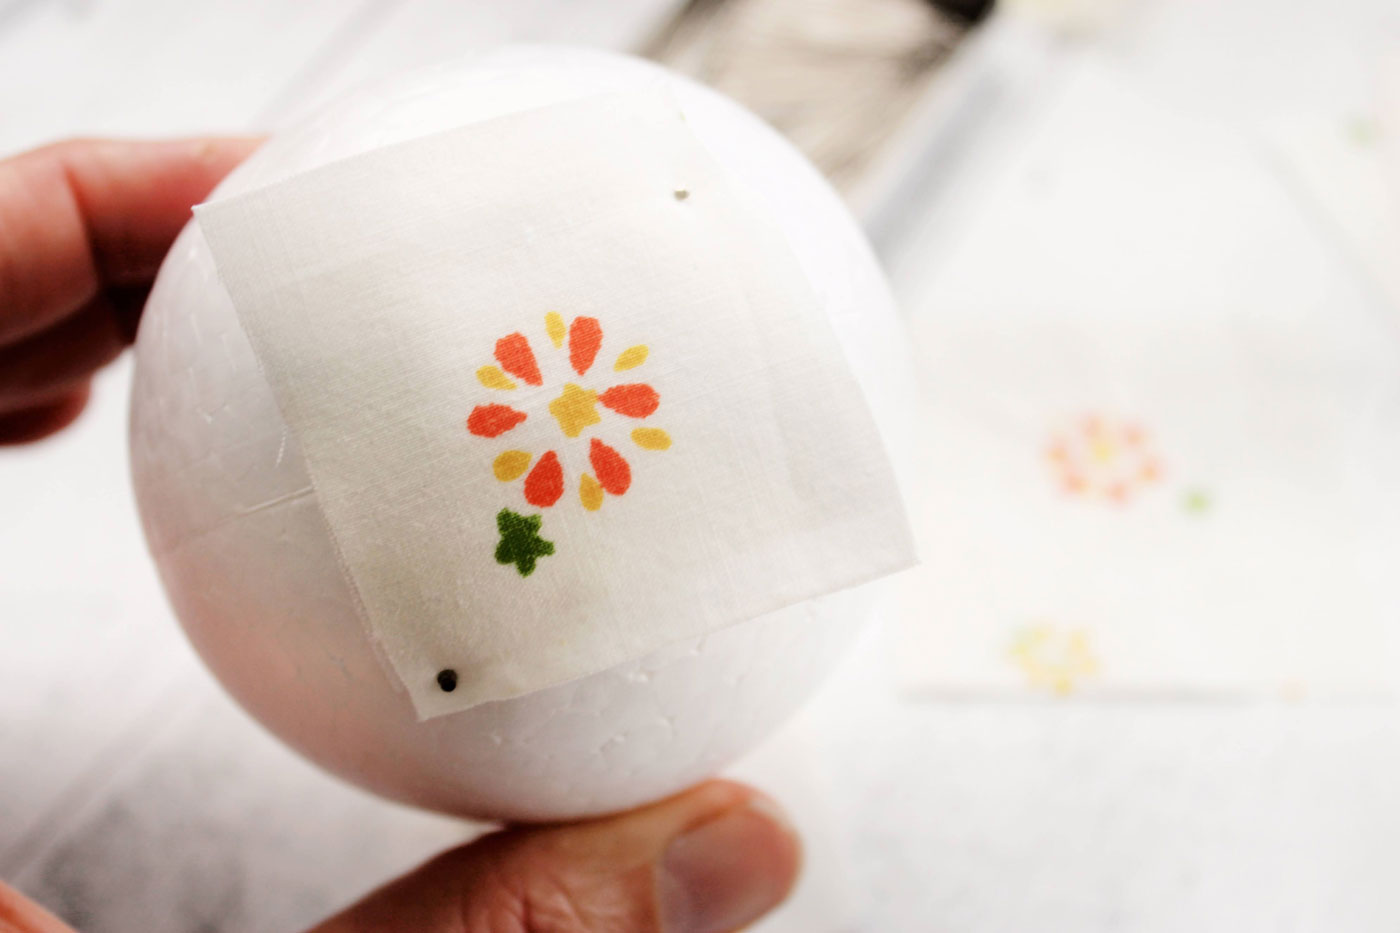 tissu blanc avec une fleur, un tissu plié jaune et une boule de polystyrène à différentes étapes de construction